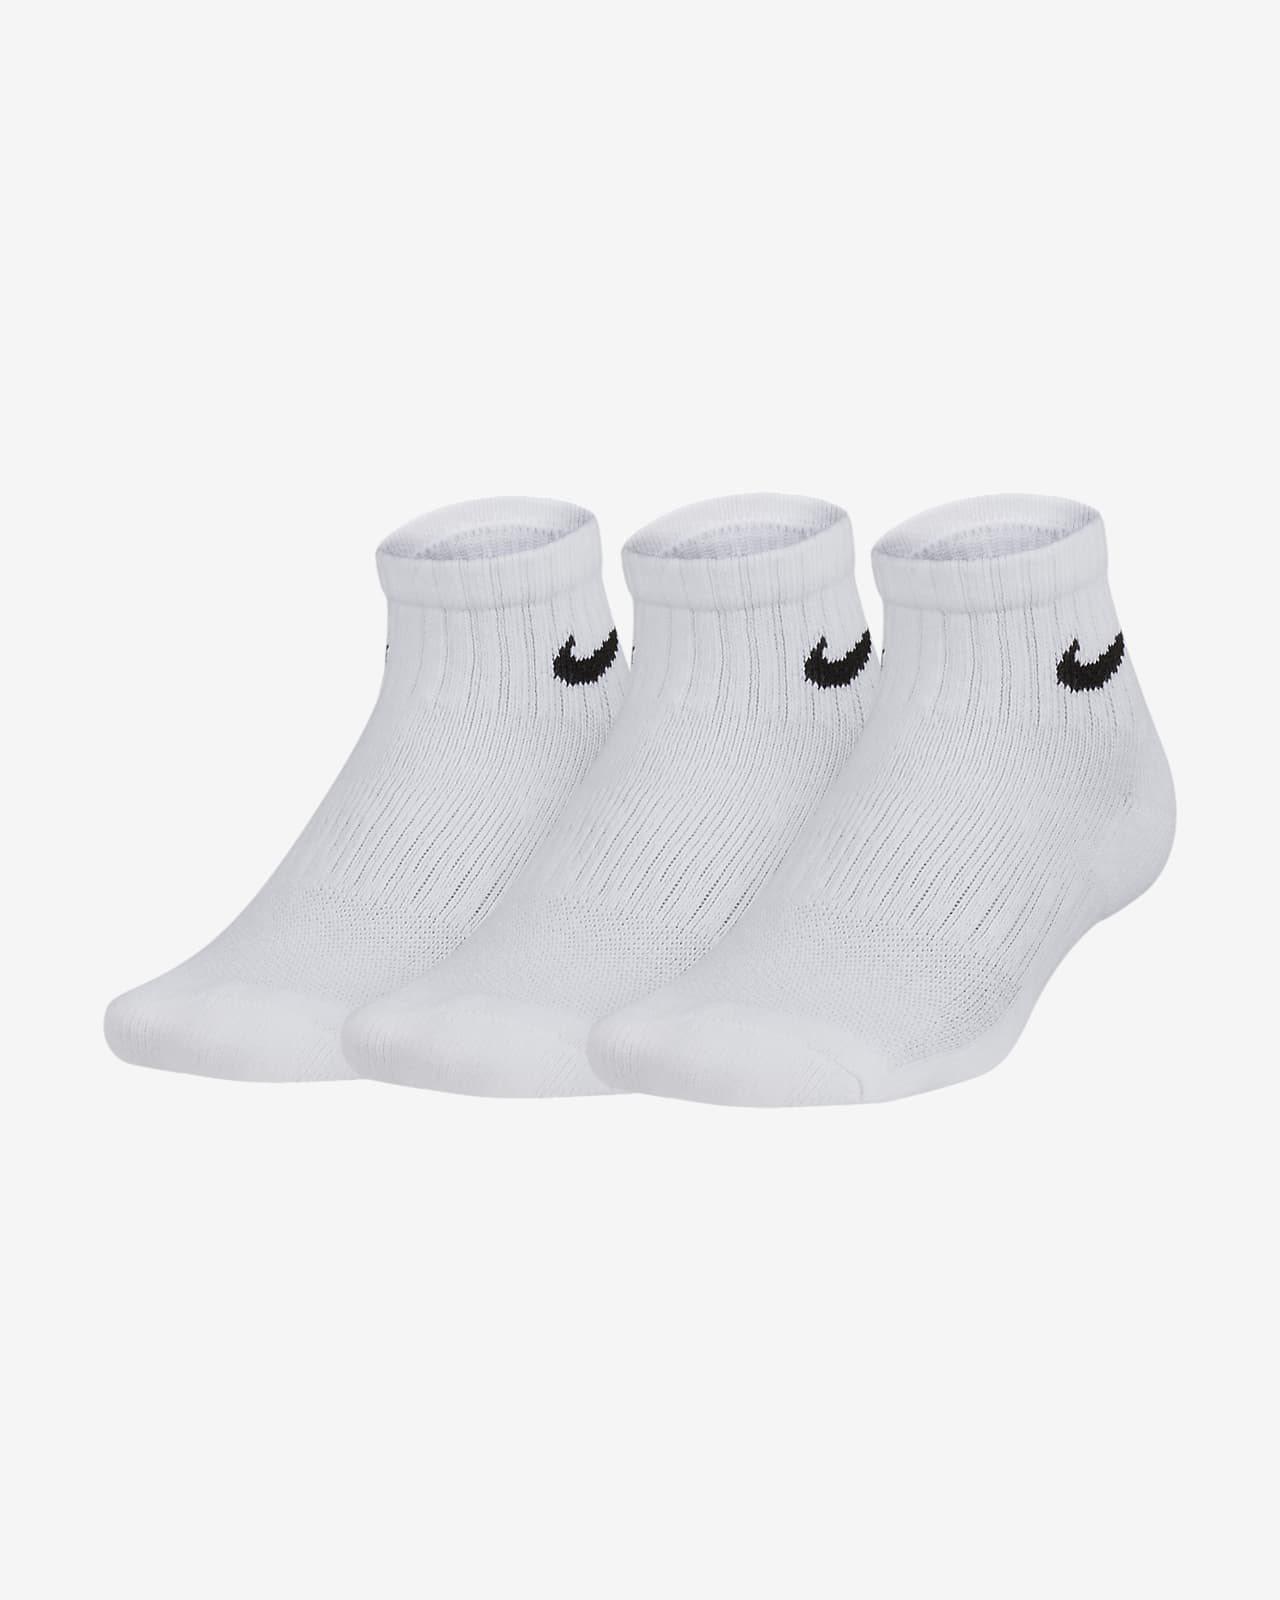 nike boys white socks